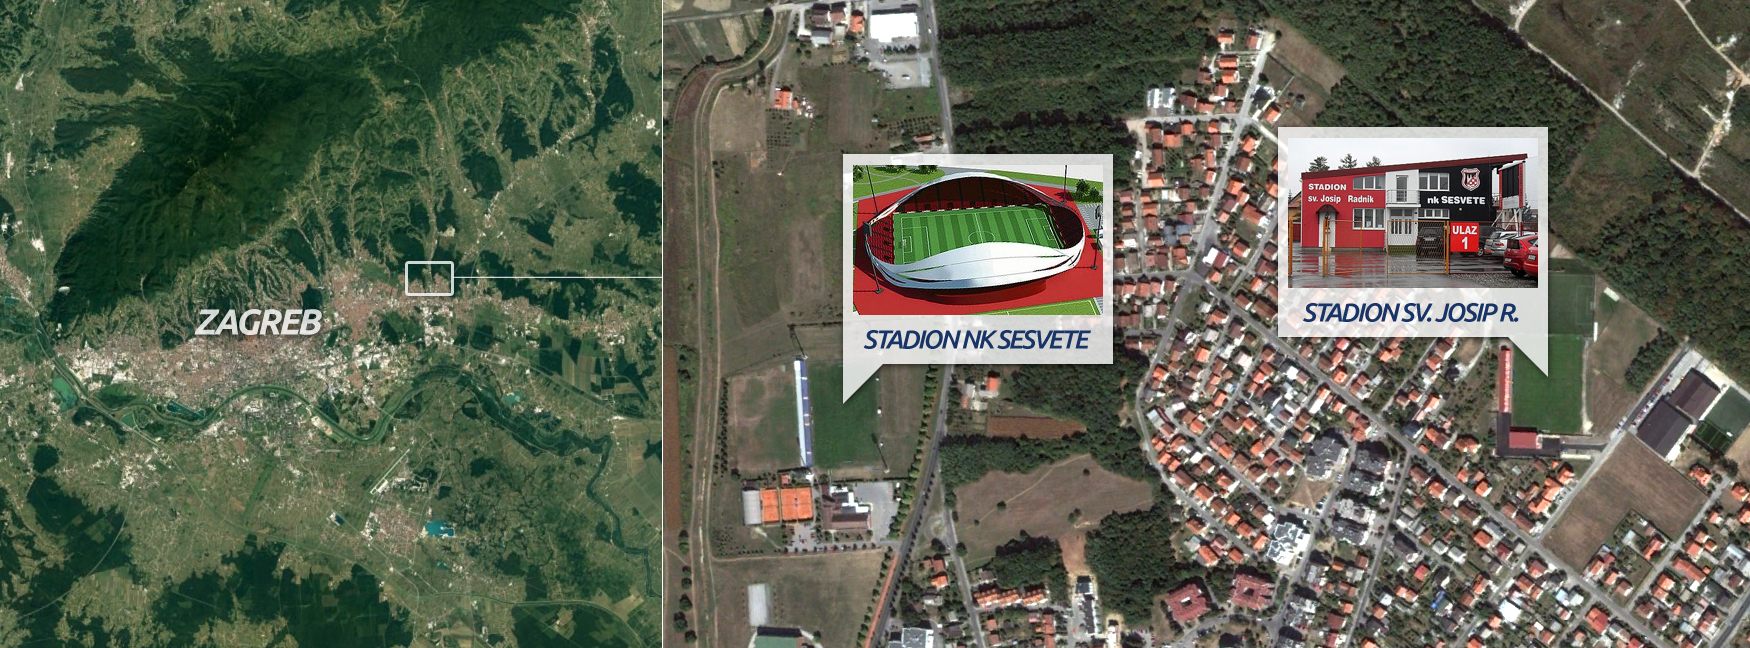 Stadion NK Sesvete